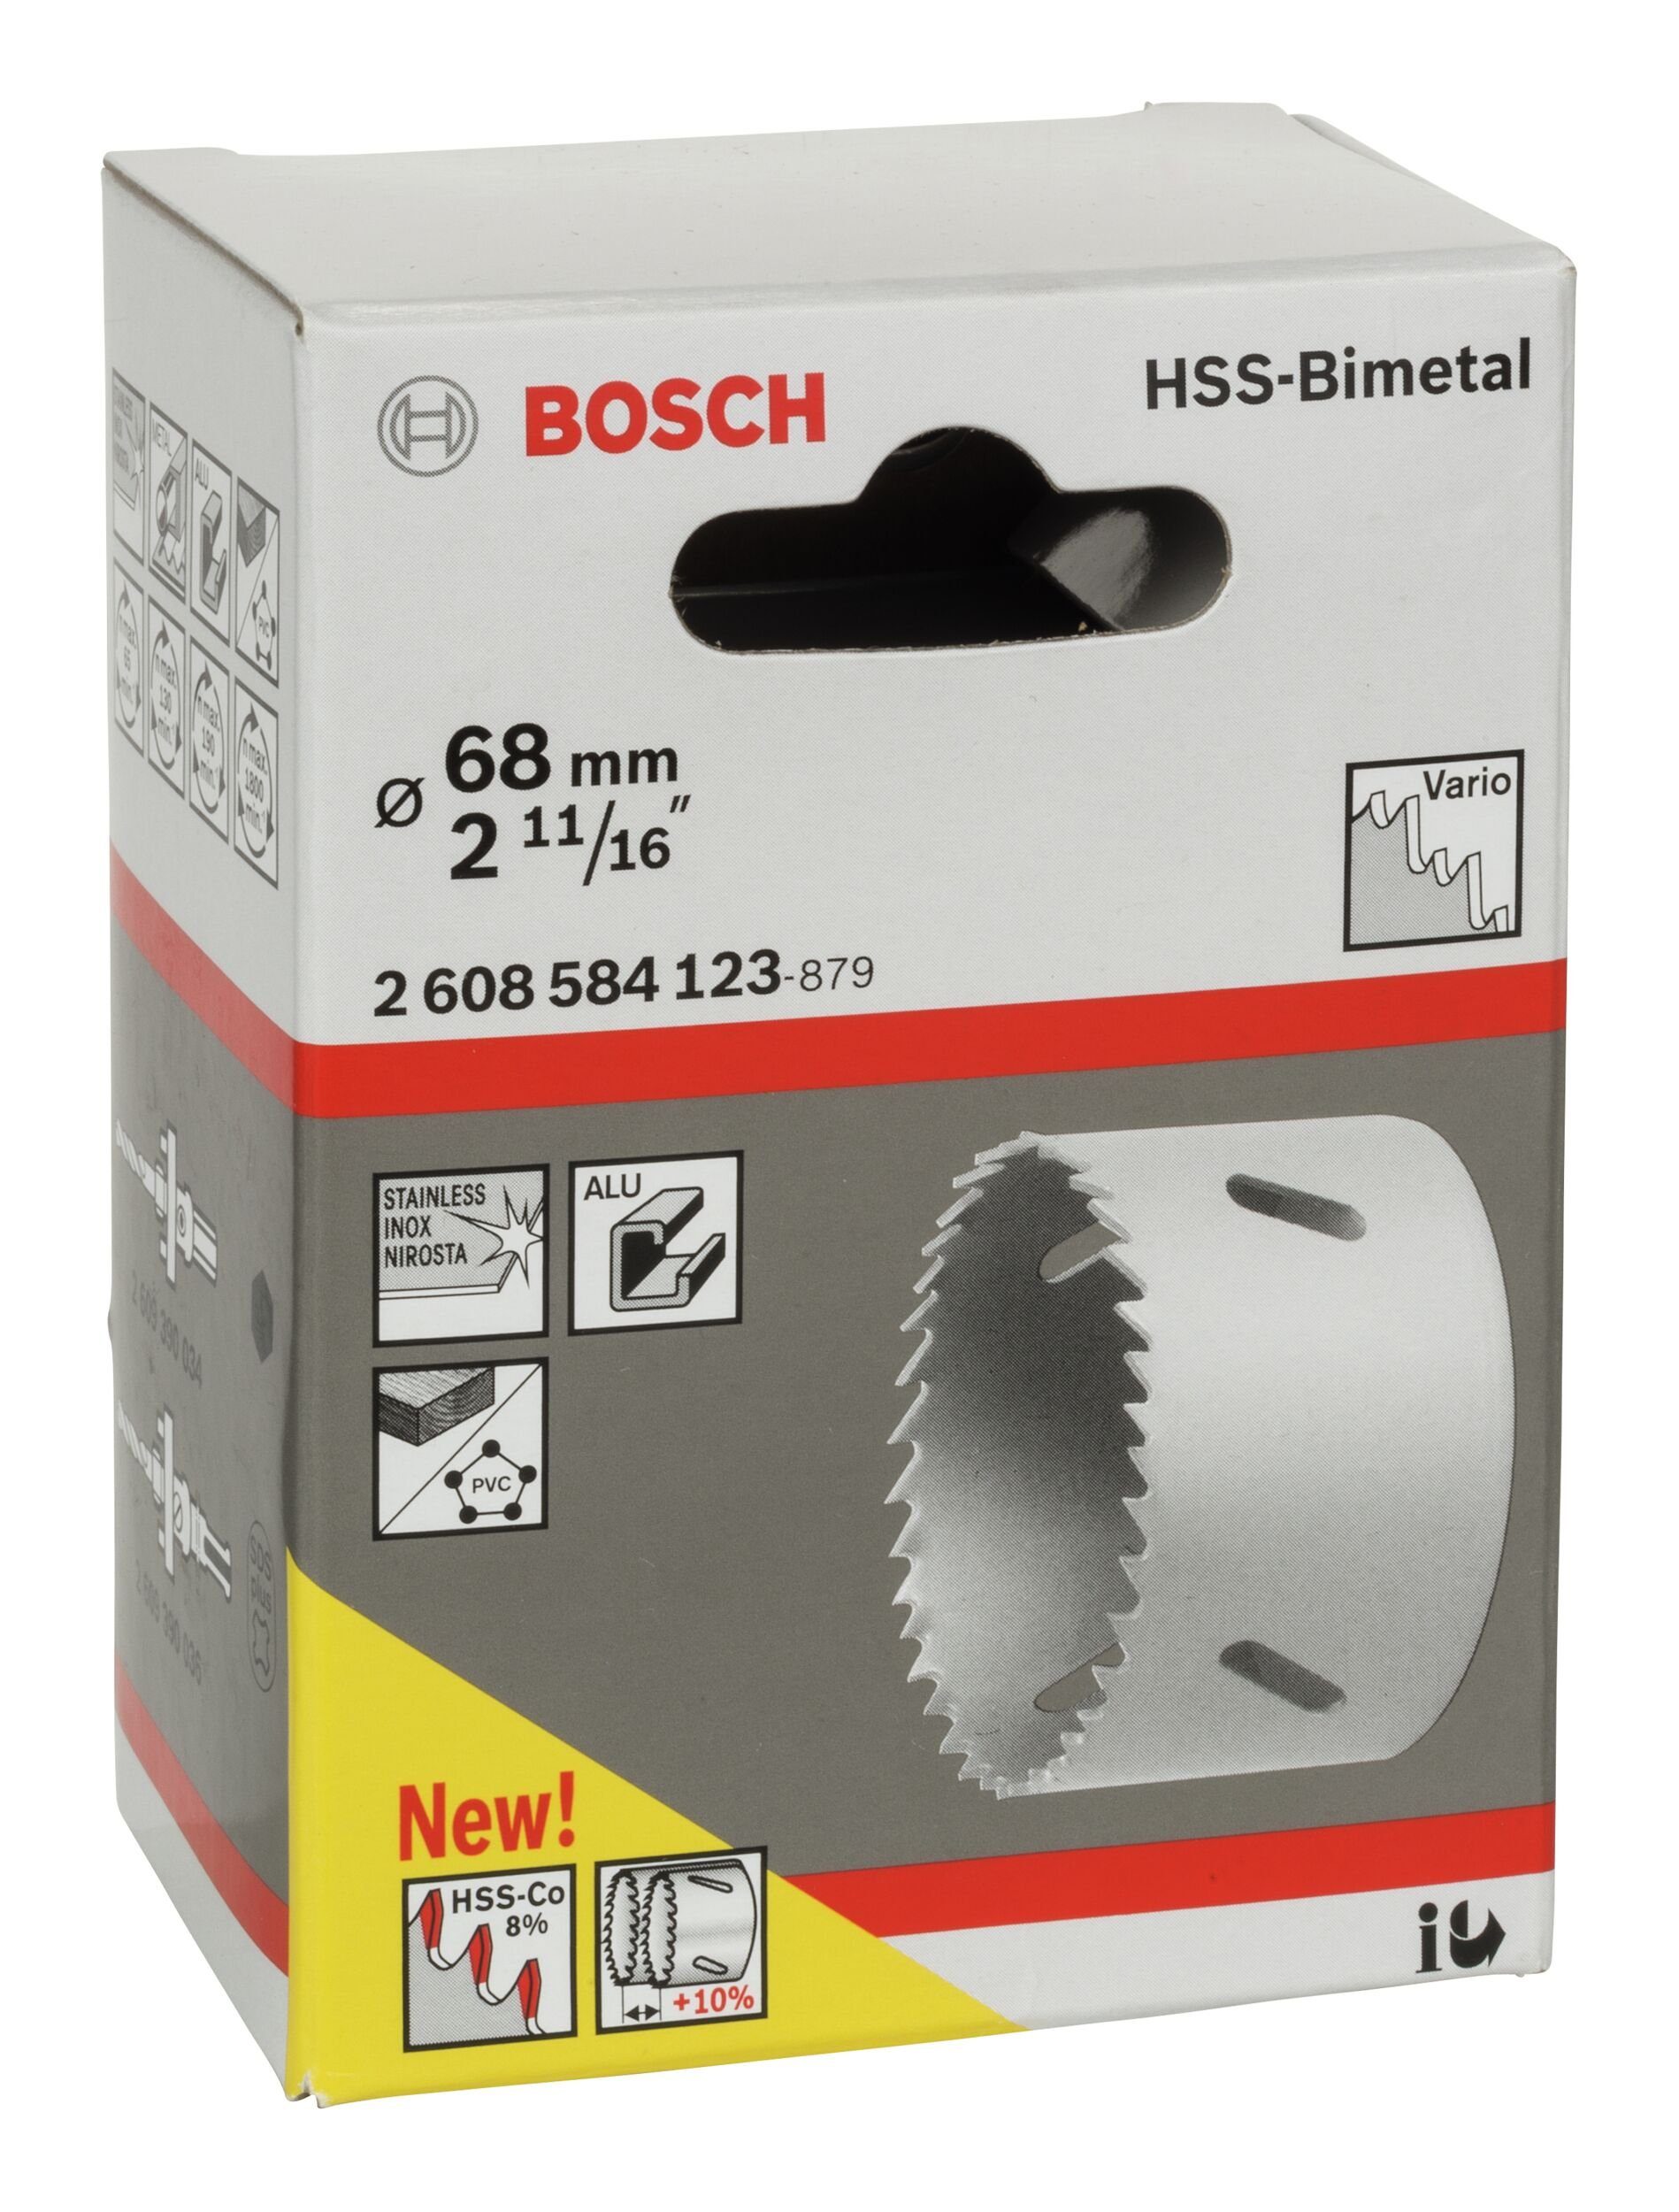 68 / HSS-Bimetall für 2 11/16" Standardadapter Ø BOSCH mm, - Lochsäge,